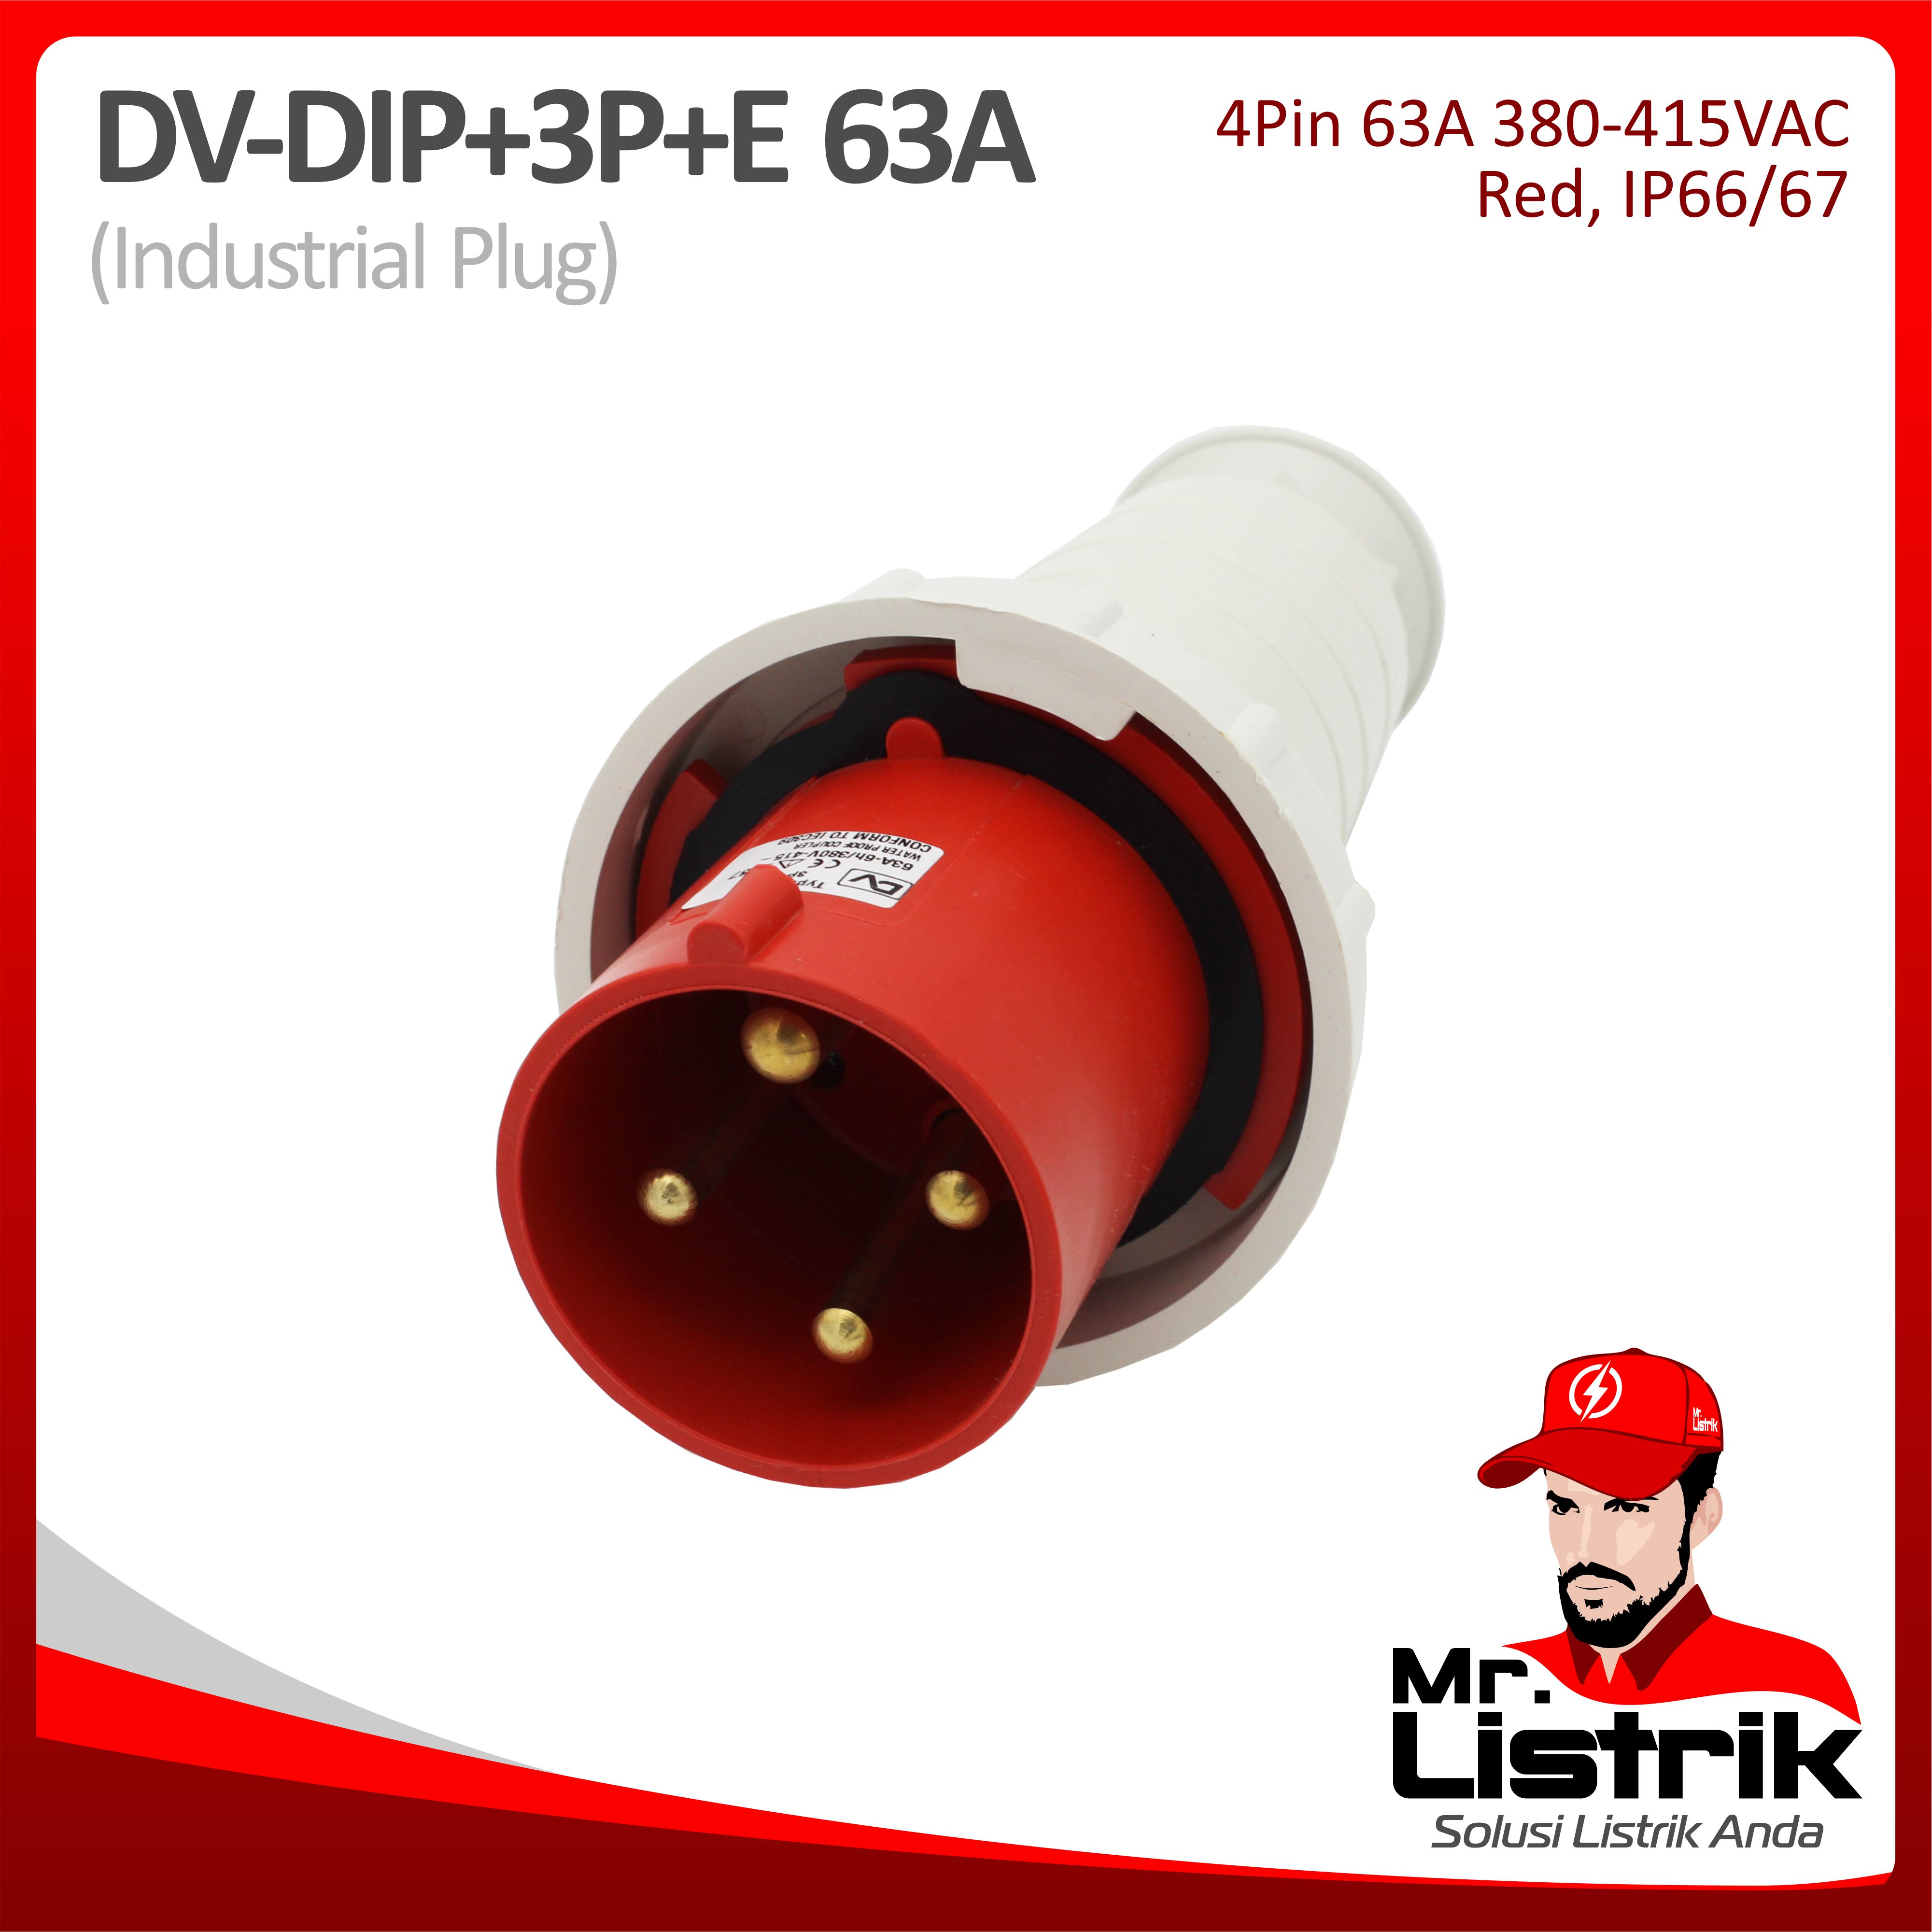 Industrial Plug 4 Pin 63A DV DIP-3P+E-63A